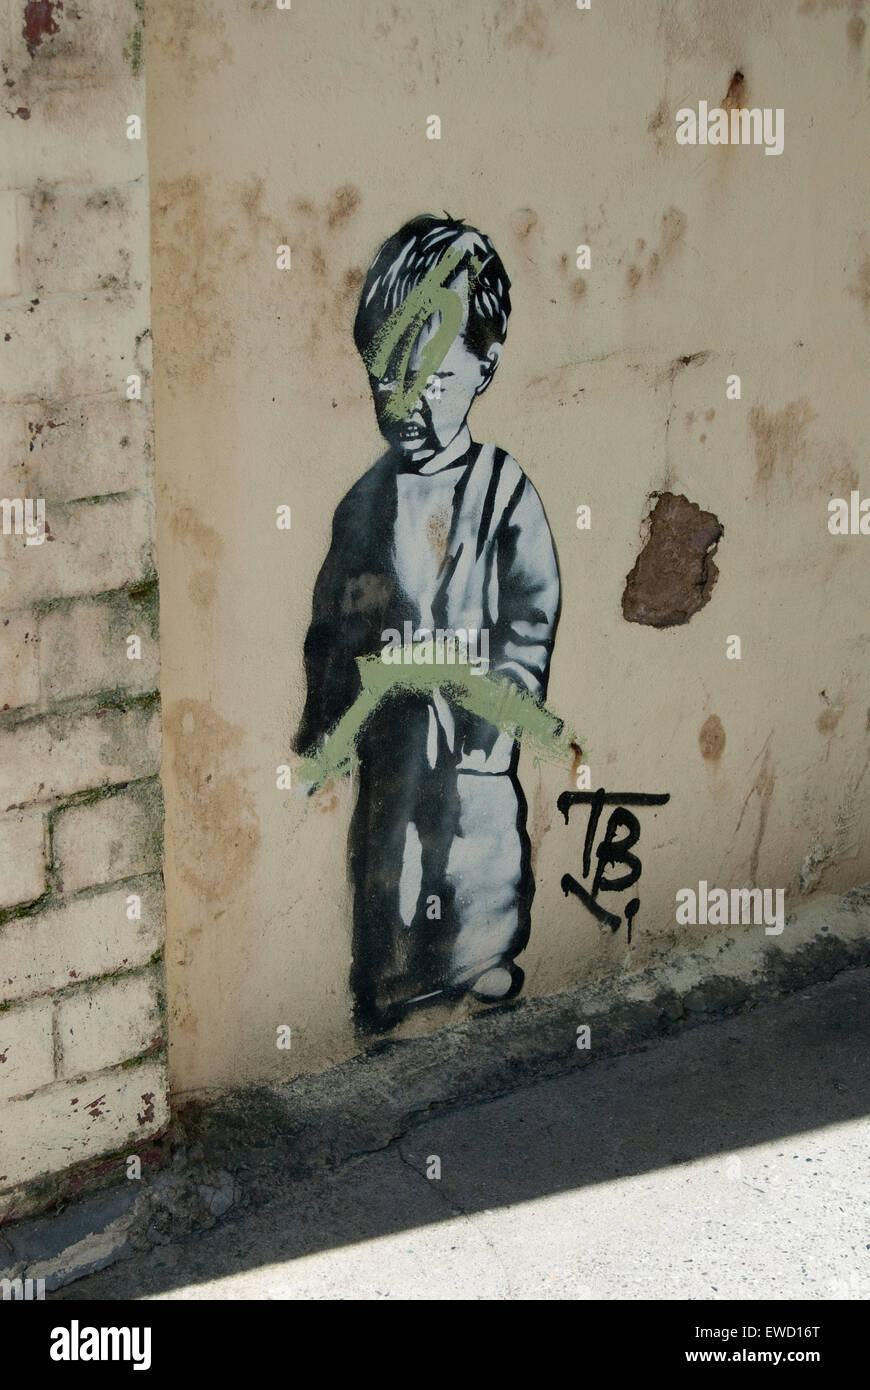 Image éditoriale d'art urbain d'un petit garçon peut-être par l'artiste de rue Banksy, qui ironiquement a été effacé par le graffiti. Banque D'Images